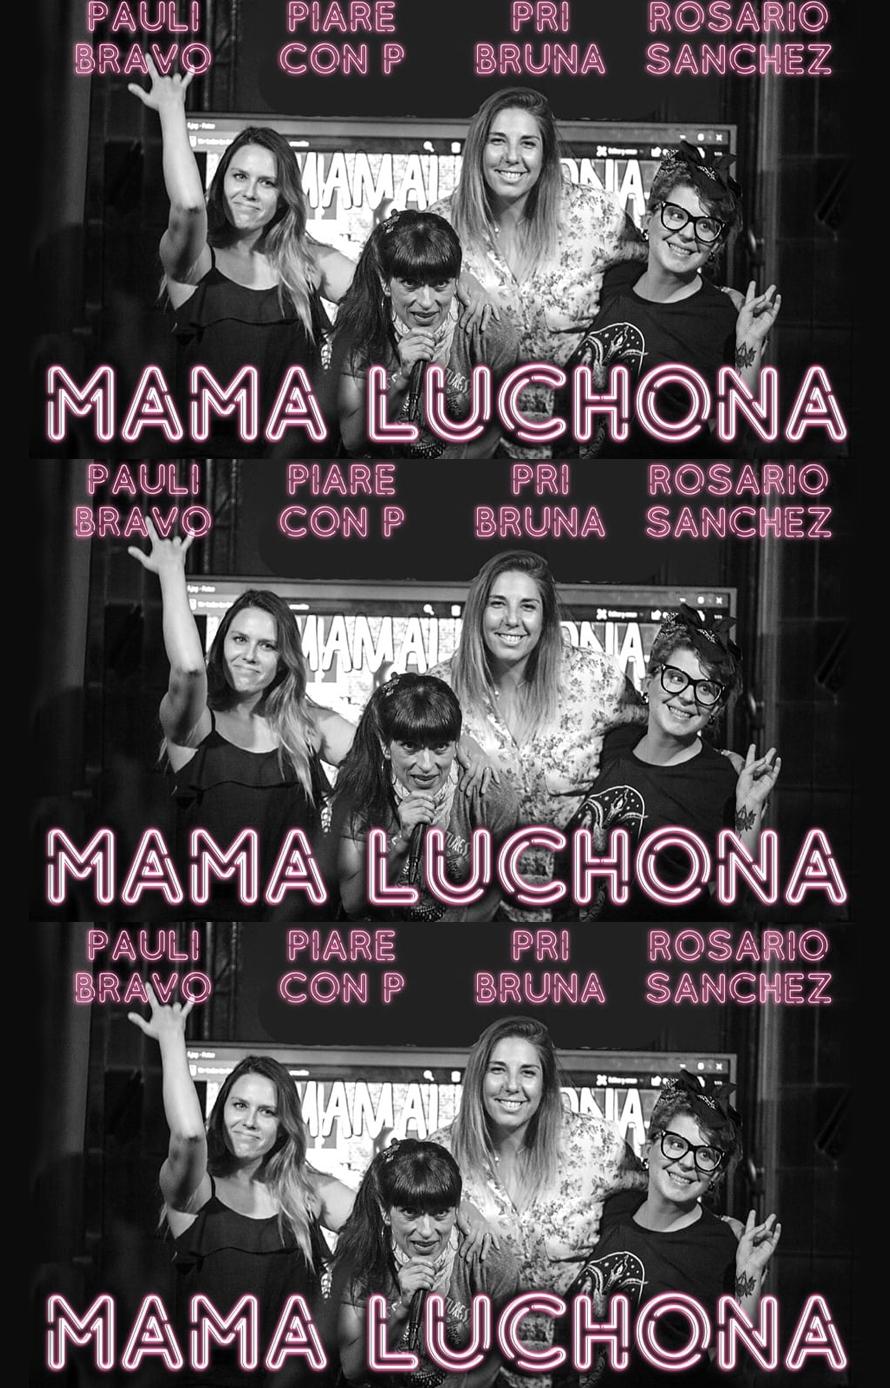 Mamá Luchona - Rosario Sánchez, Pri Bruna, Piare con P y Pauli Bravo